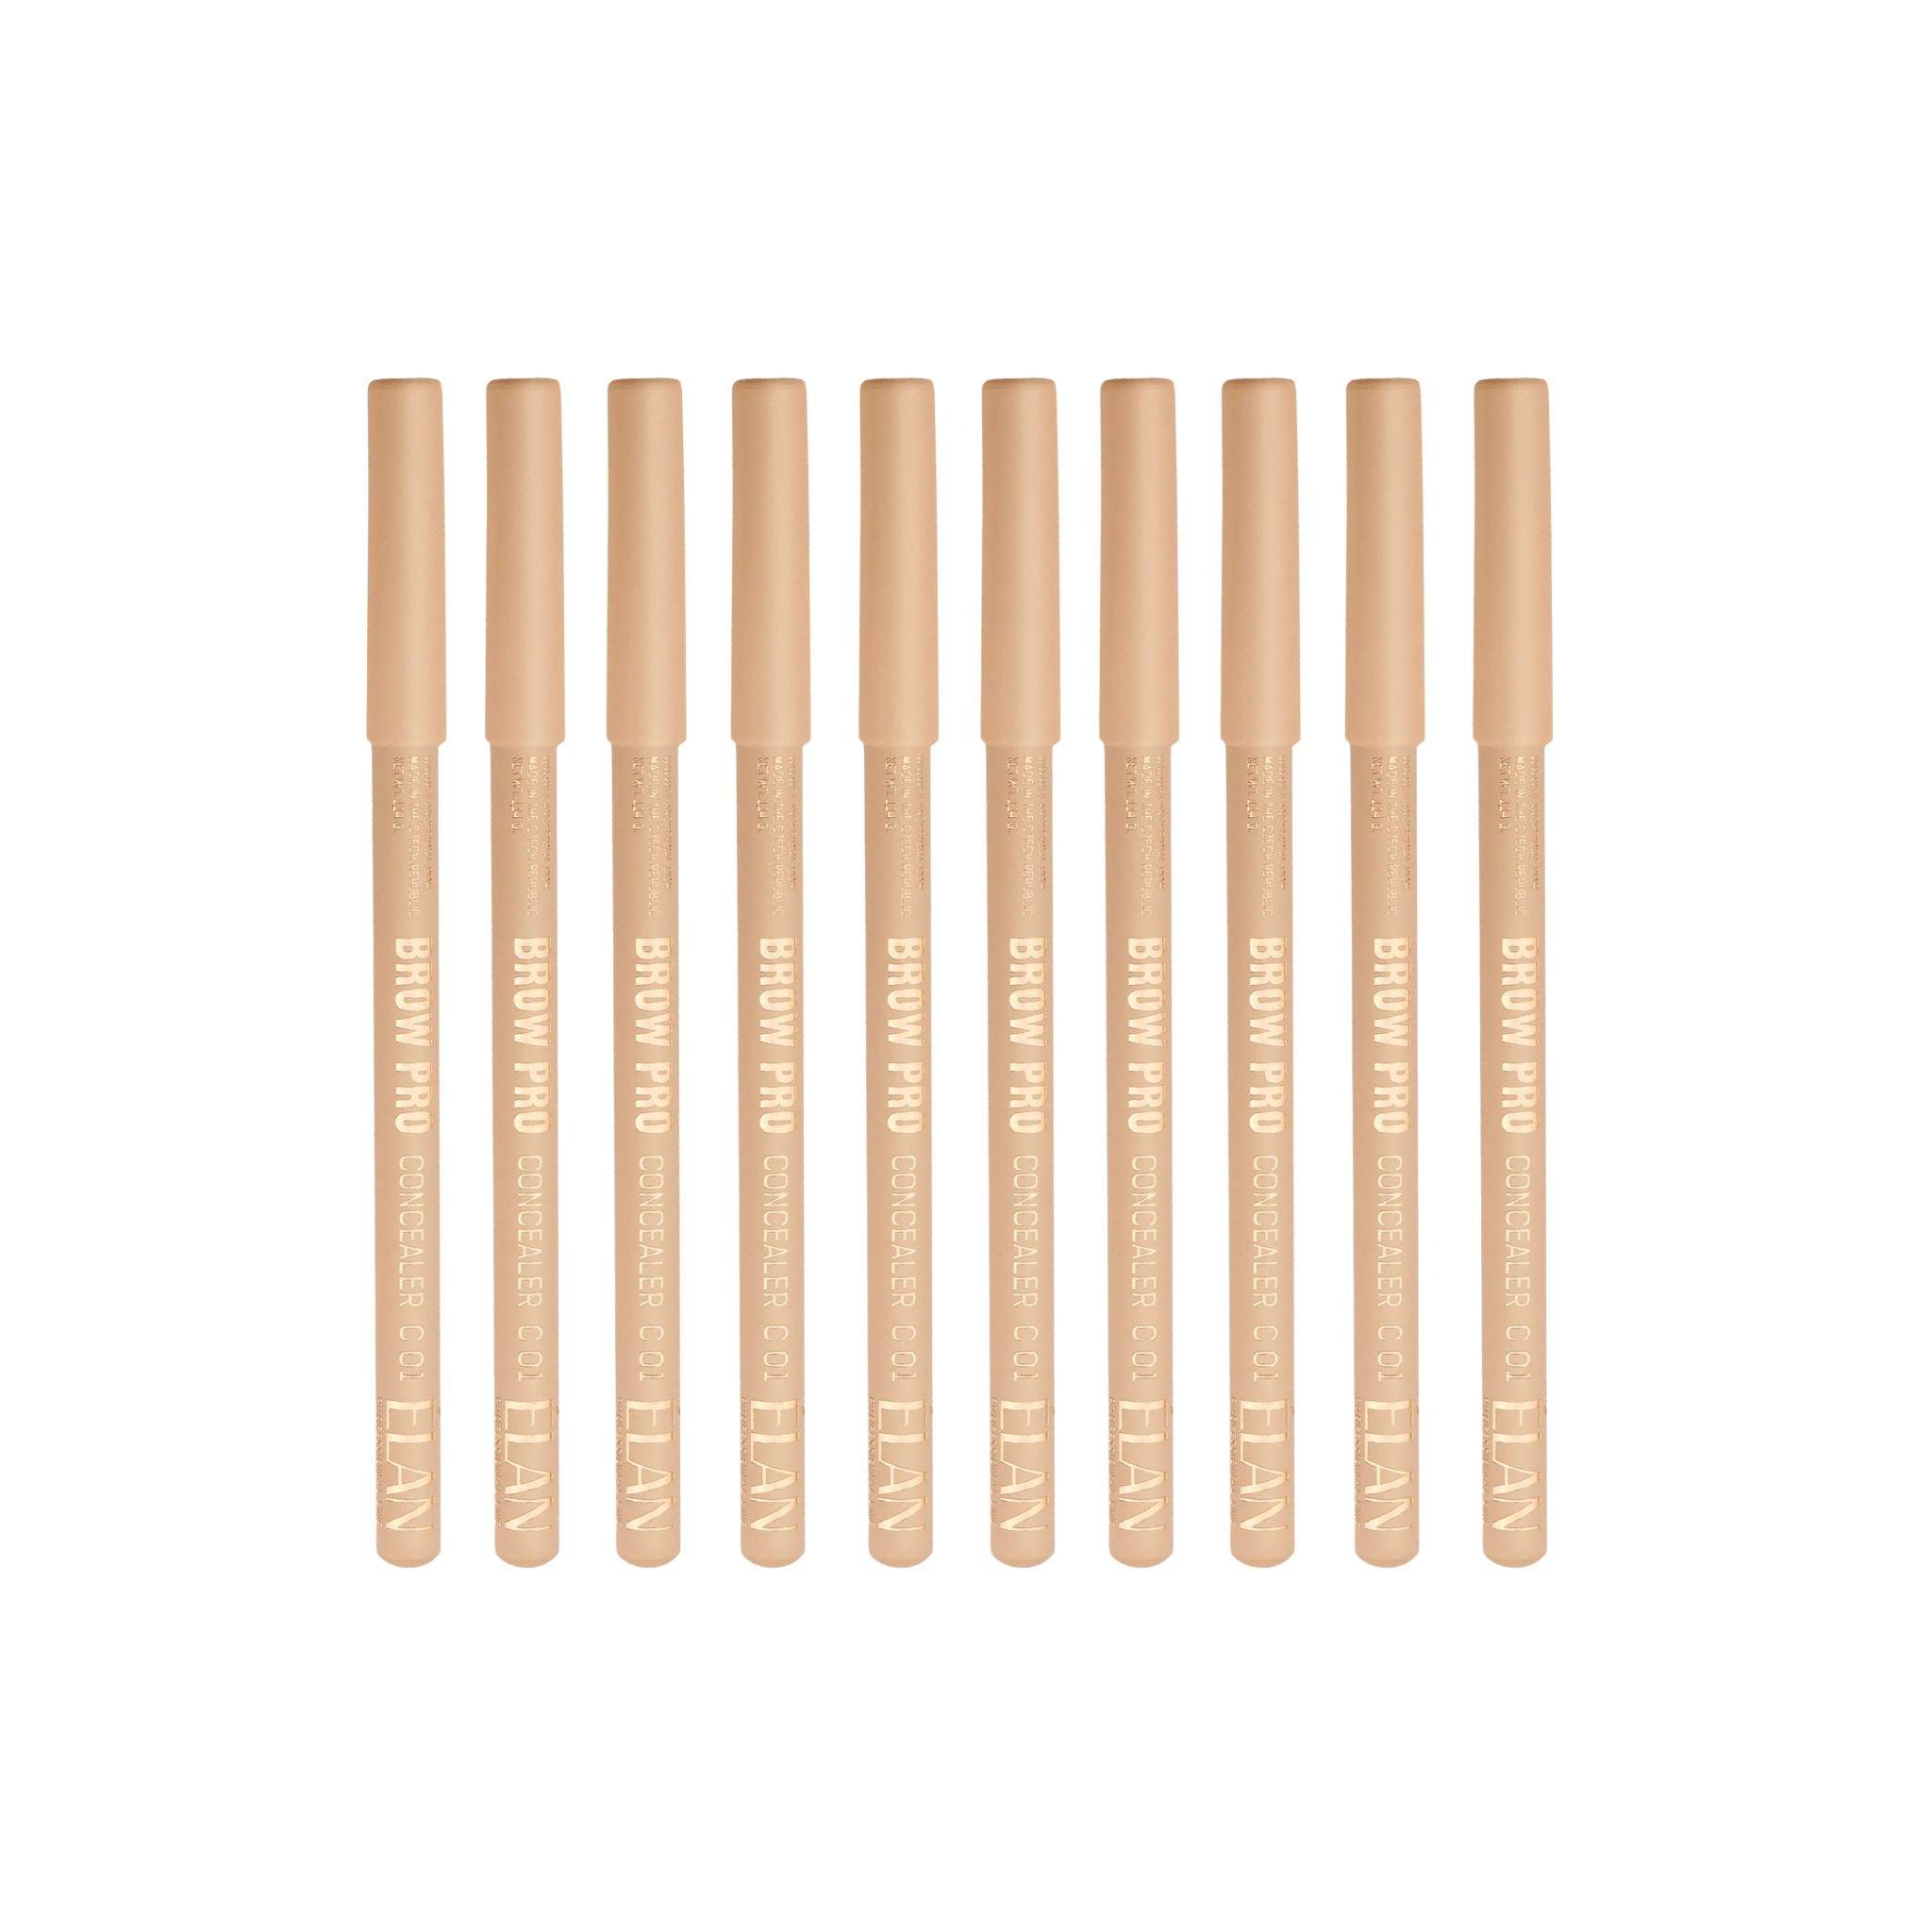 Elan Multi-Purpose Concealer Pencil Retail Bundle - The Beauty House Shop